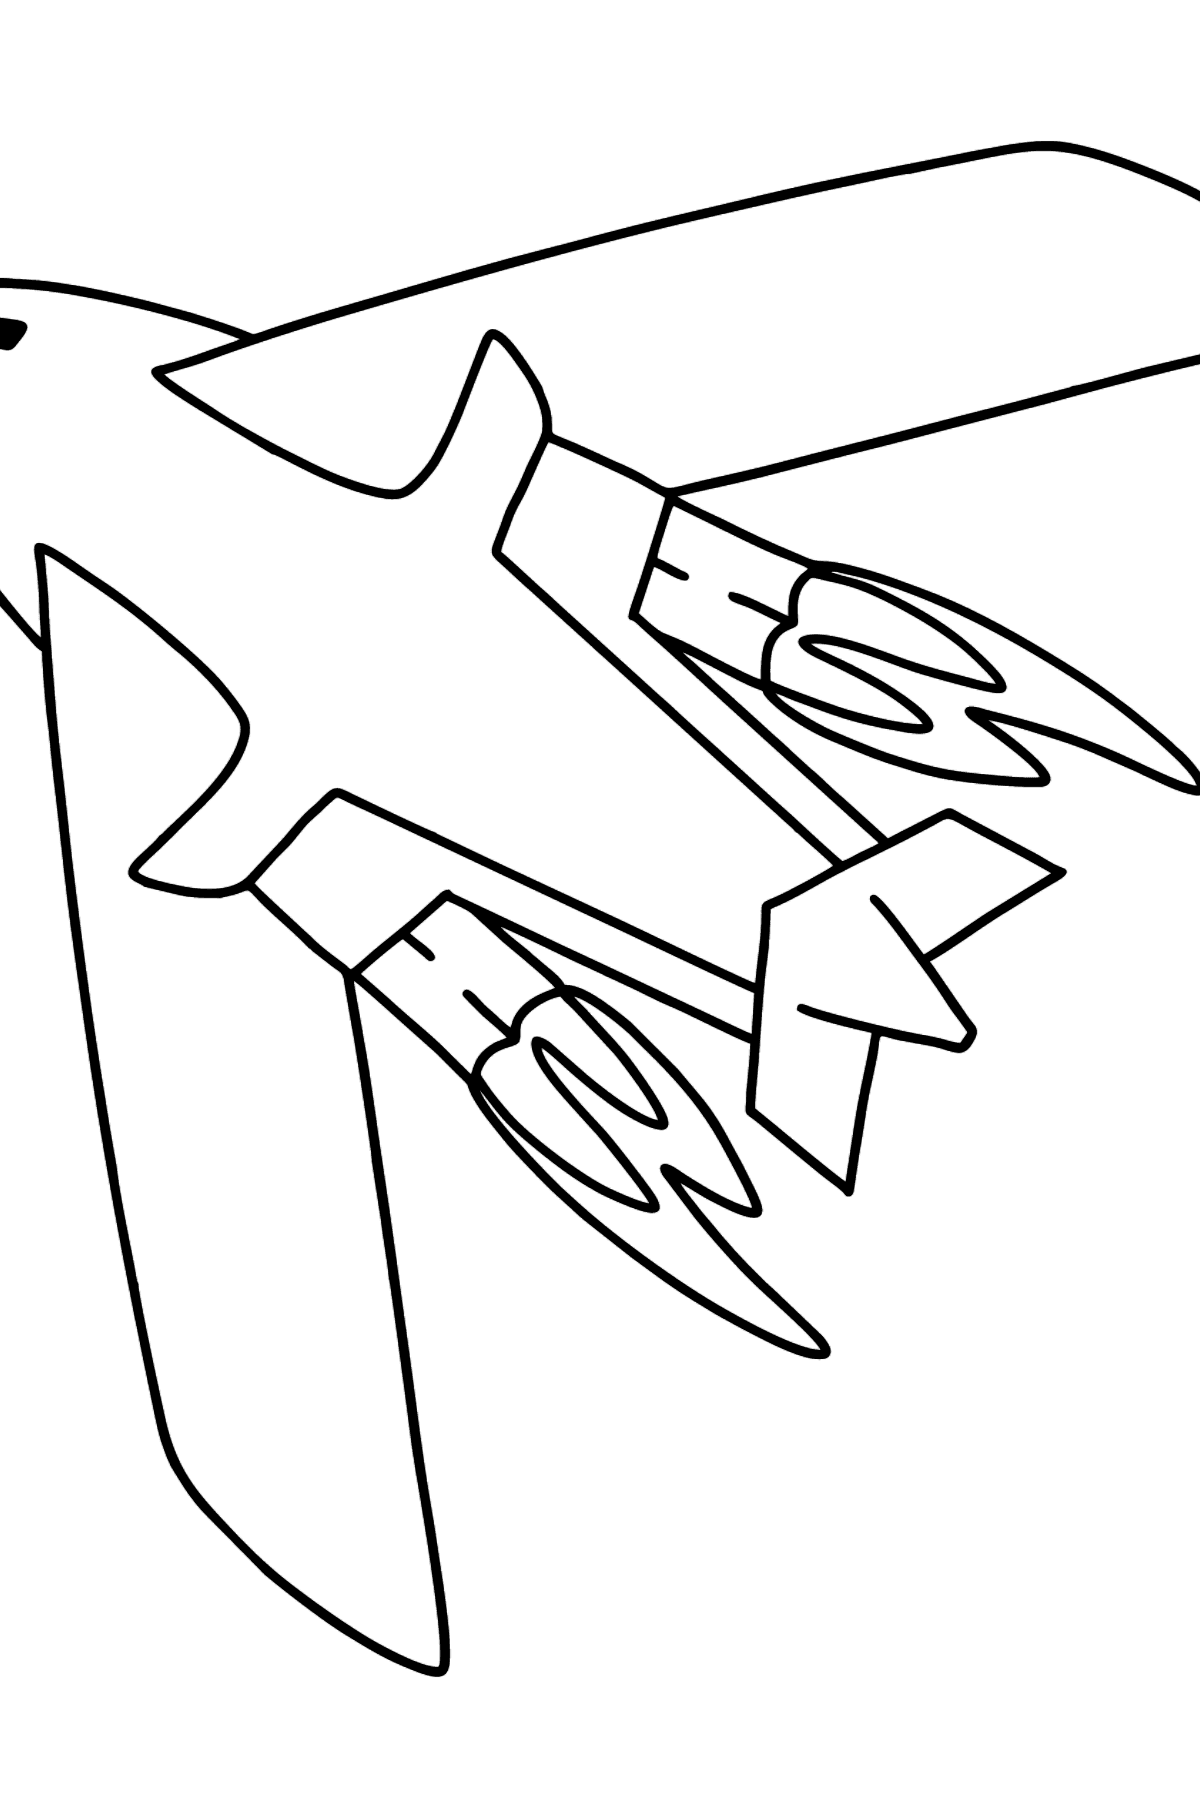 Boyama sayfası uçak tu-160 - Boyamalar çocuklar için